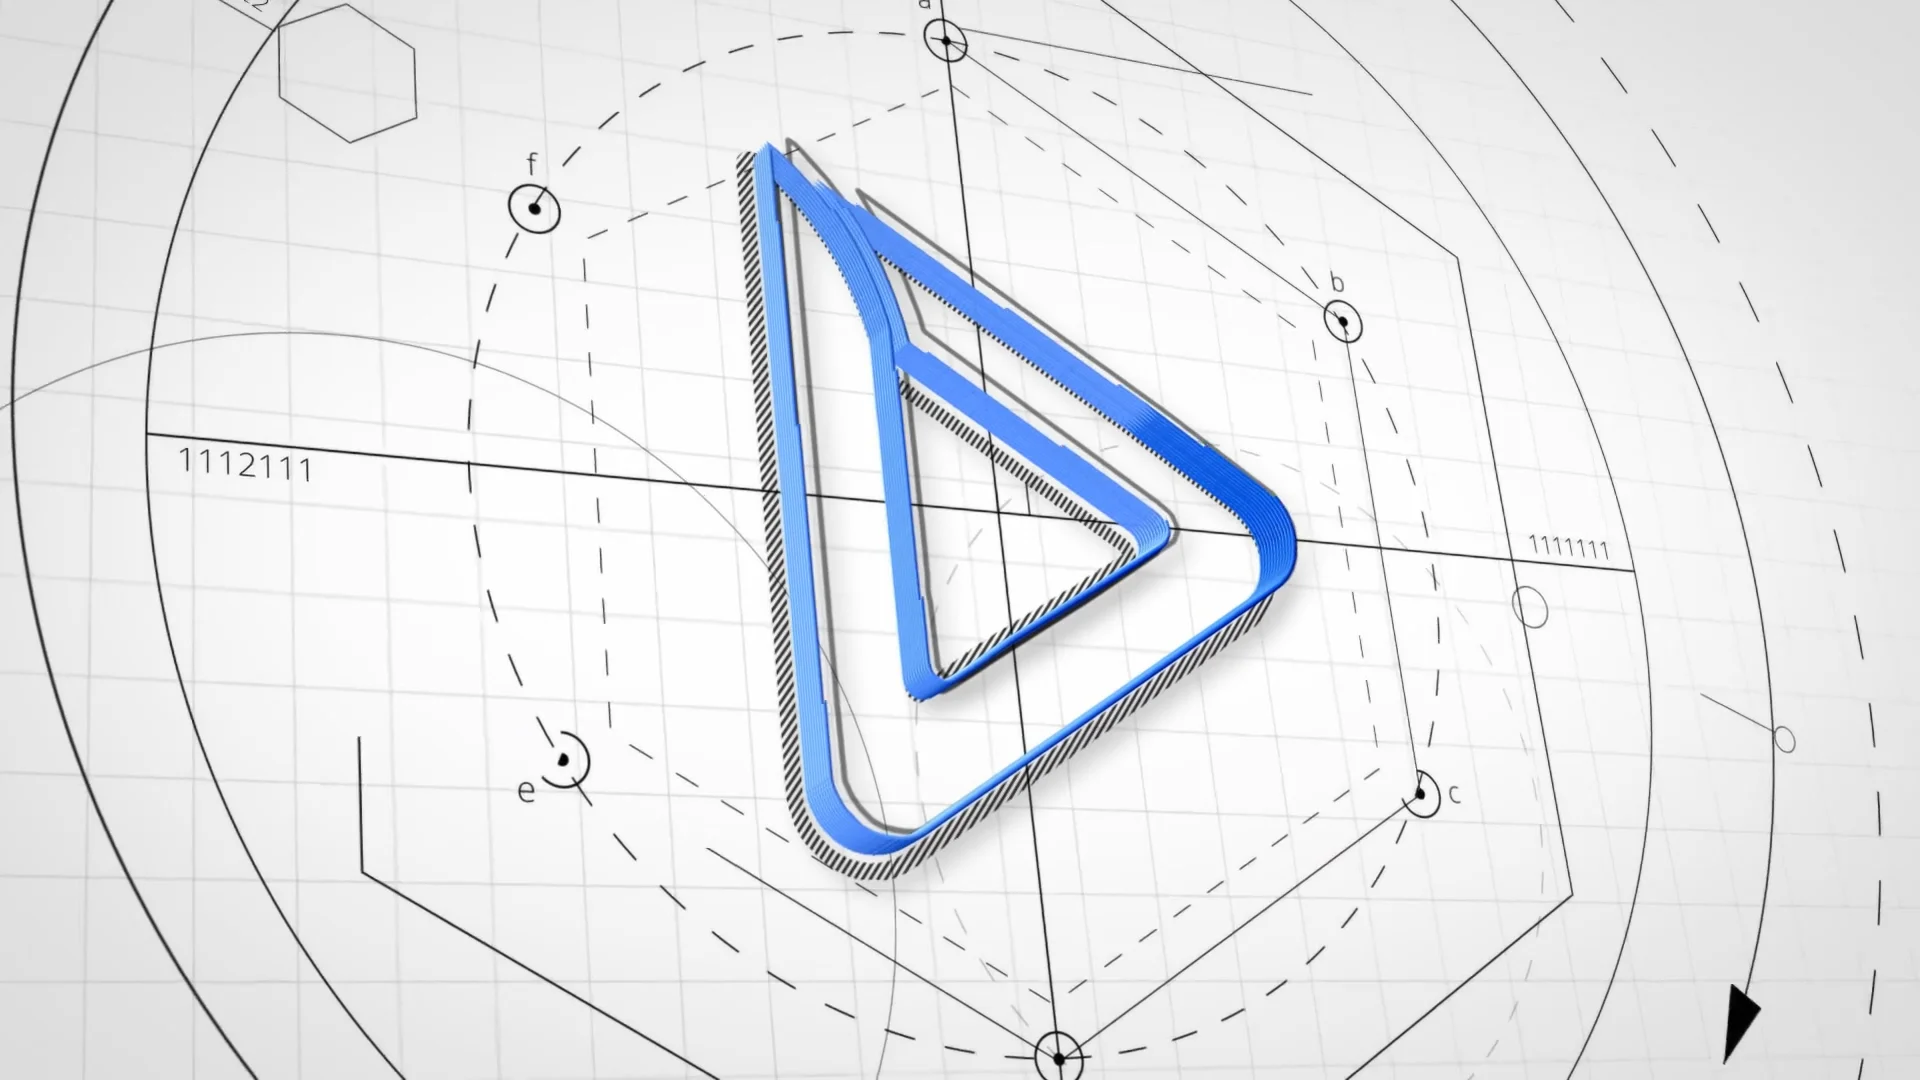 Logo design 7 : l'univers graphique on Vimeo